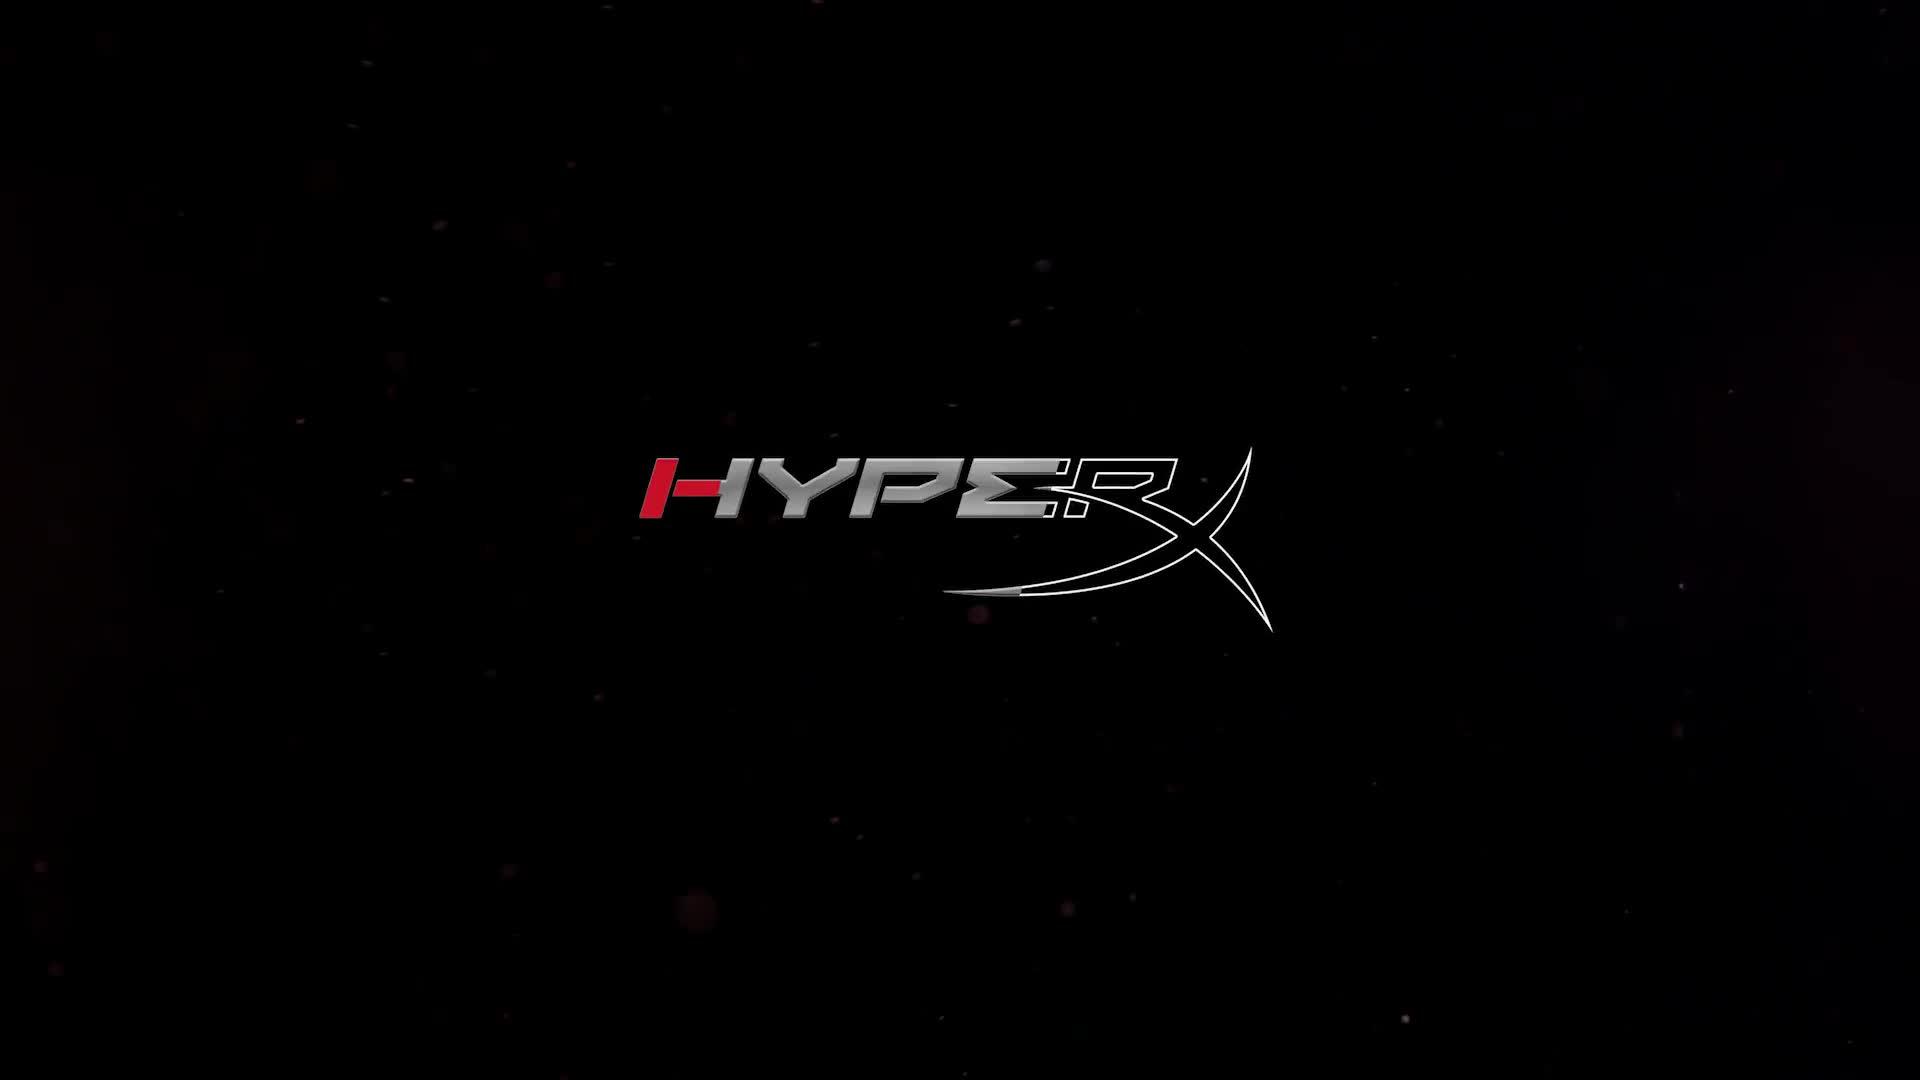 HyperX PC Gaming Logo Simple Background Dark Background Minimalism Hewlett  Packard Wallpaper - Resolution:1920x1080 - ID:1315490 